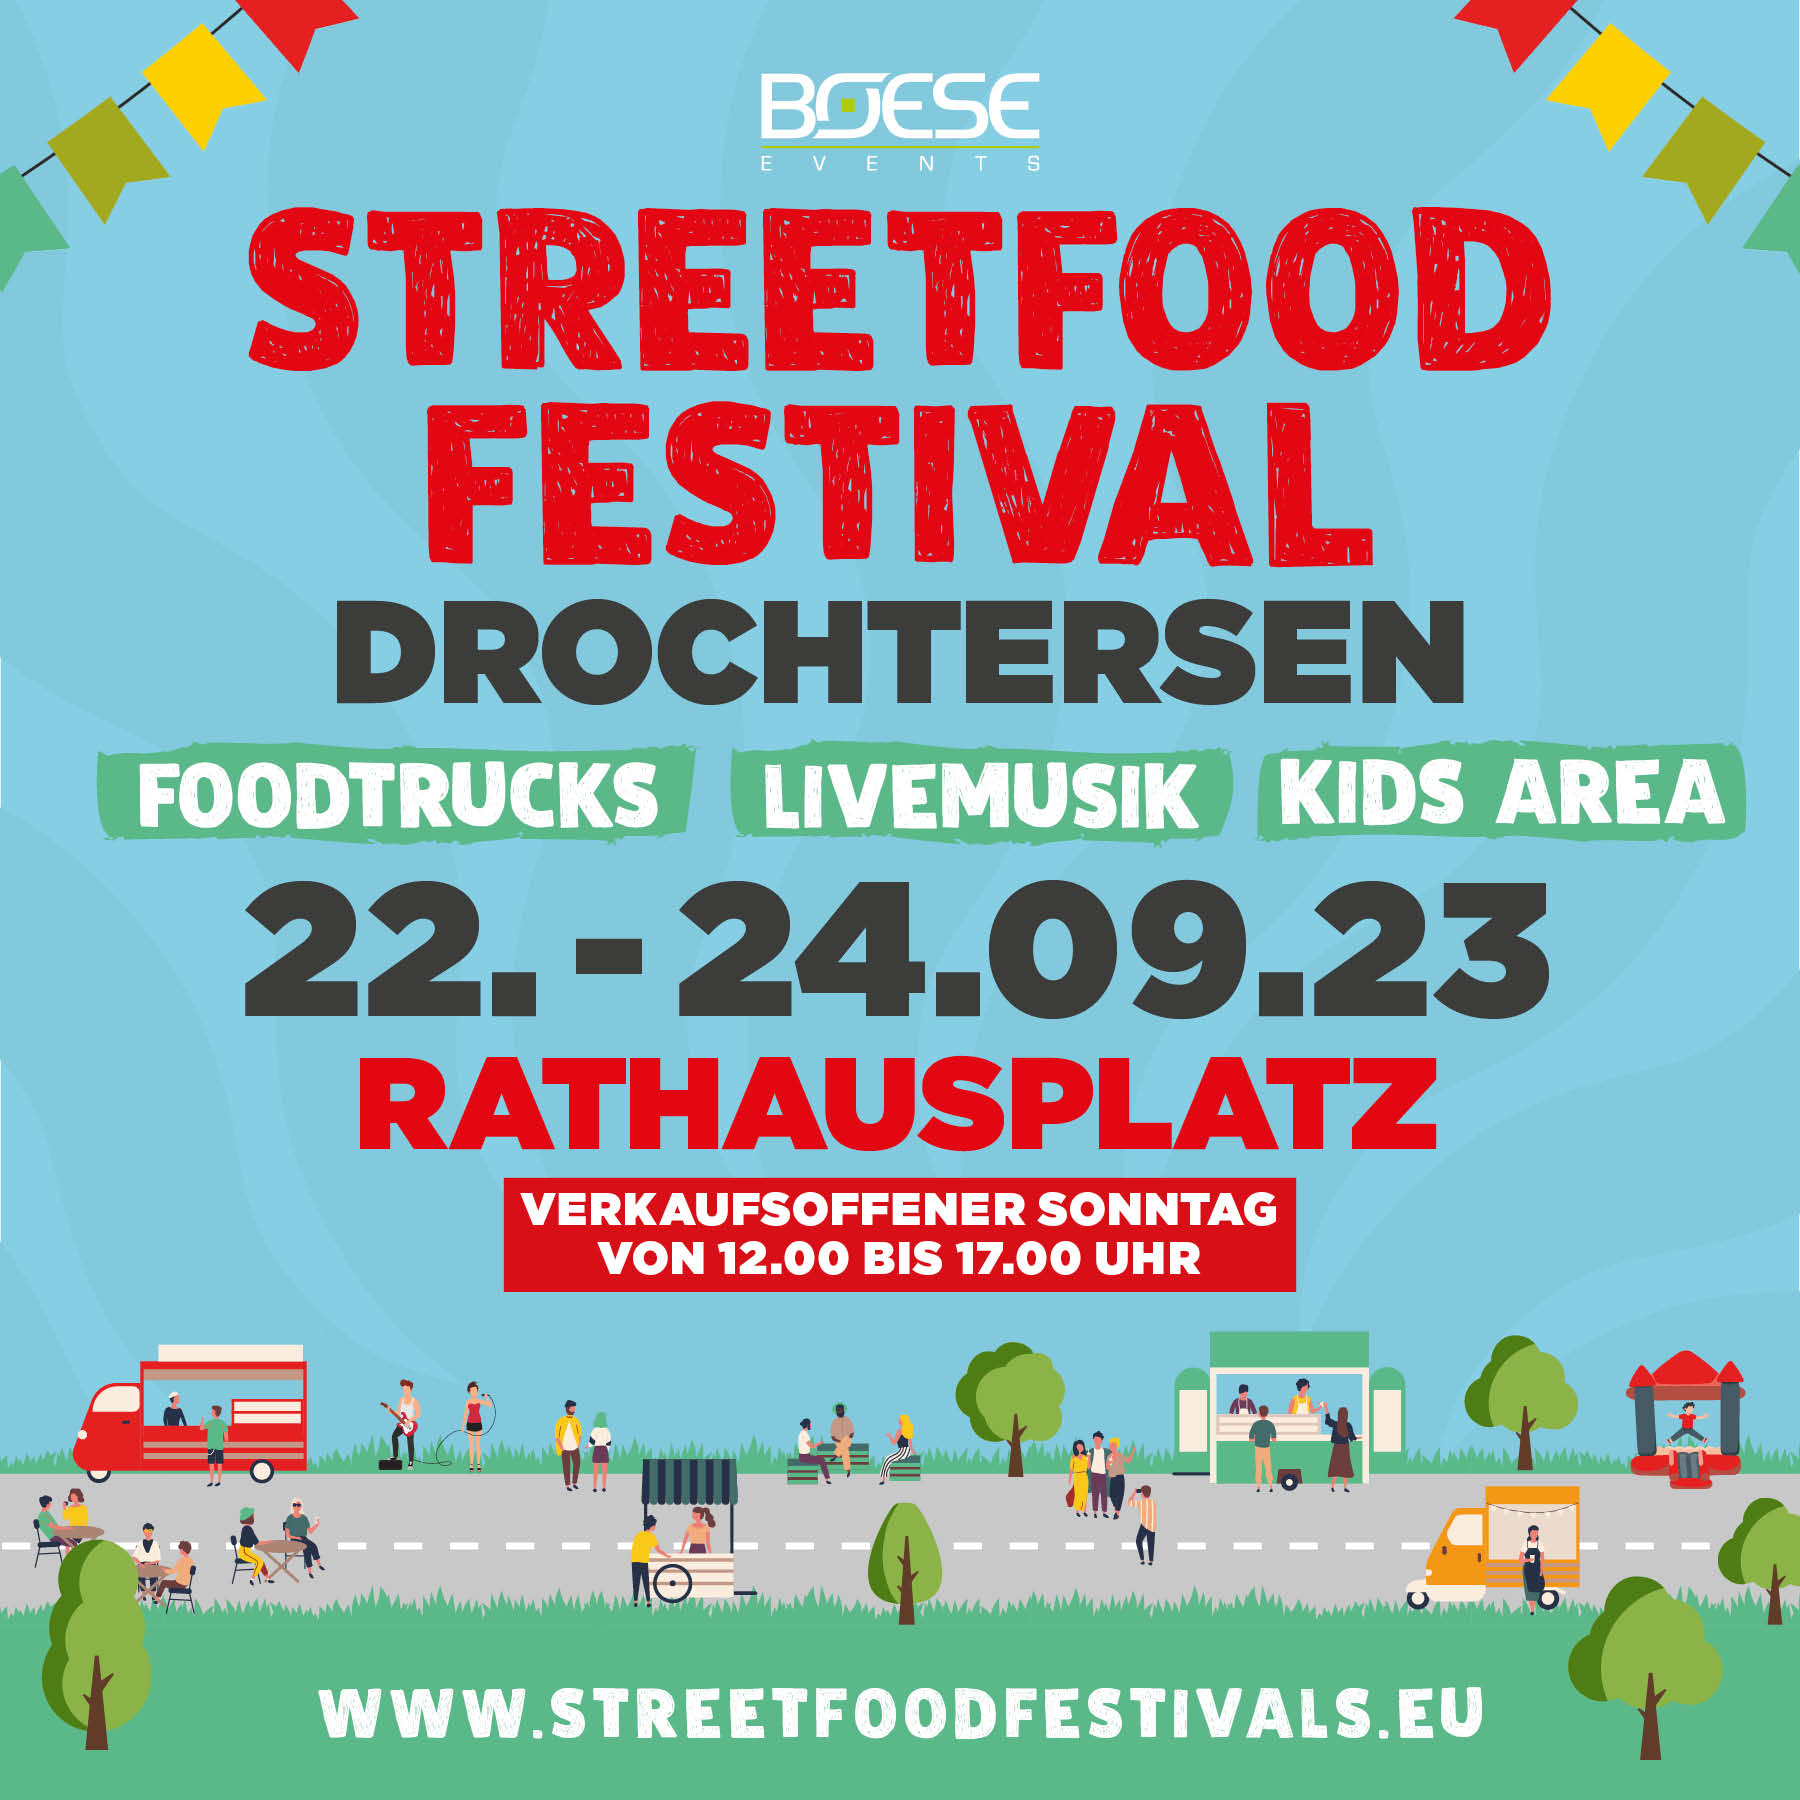 Streetfoodfestival Drochtersen